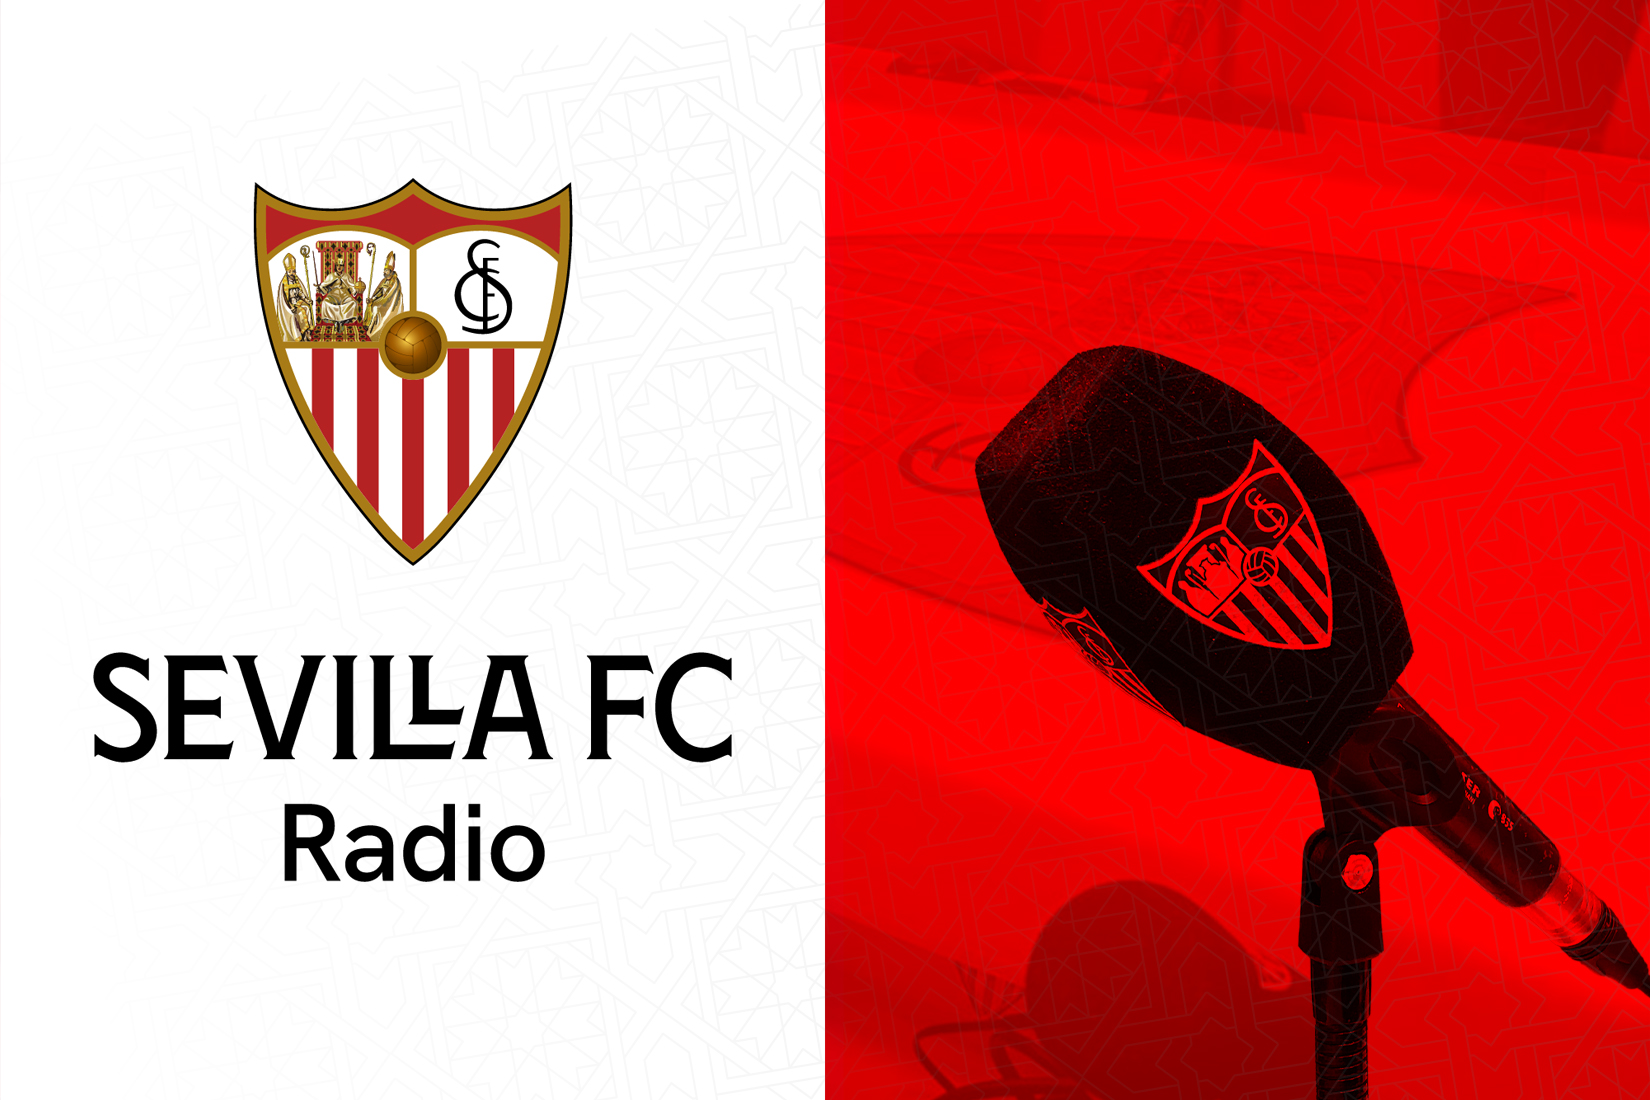 fuga Lo encontré salir Maratón de 8 horas de fútbol en SFC Radio | Sevilla FC